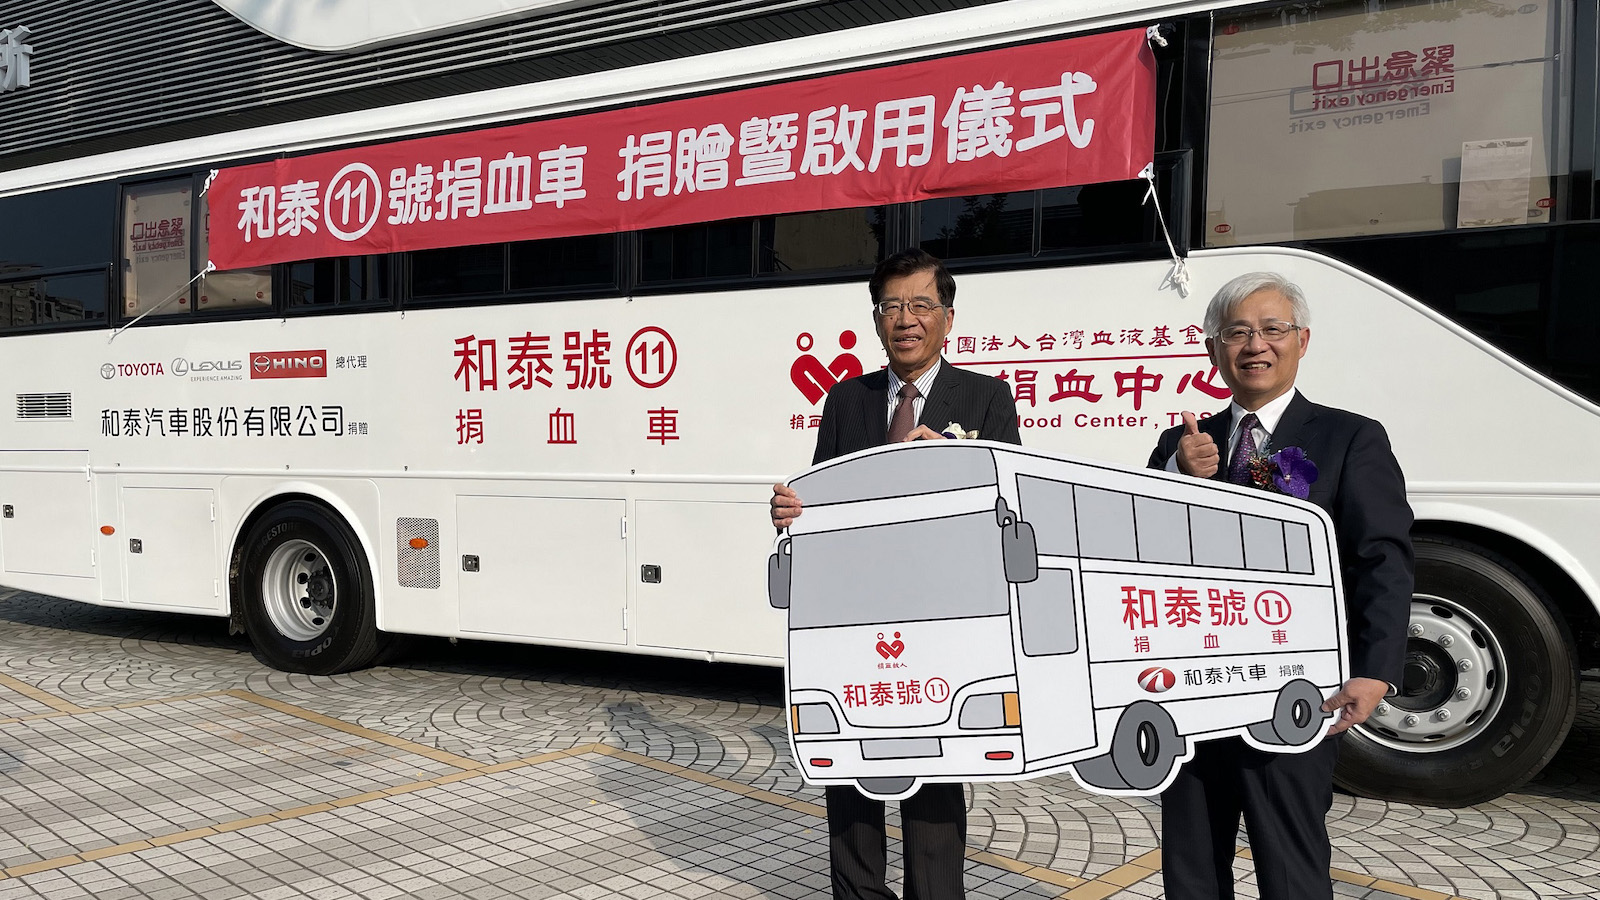 ▲ 支援台灣醫療用血 和泰汽車捐贈第 11 台捐血車